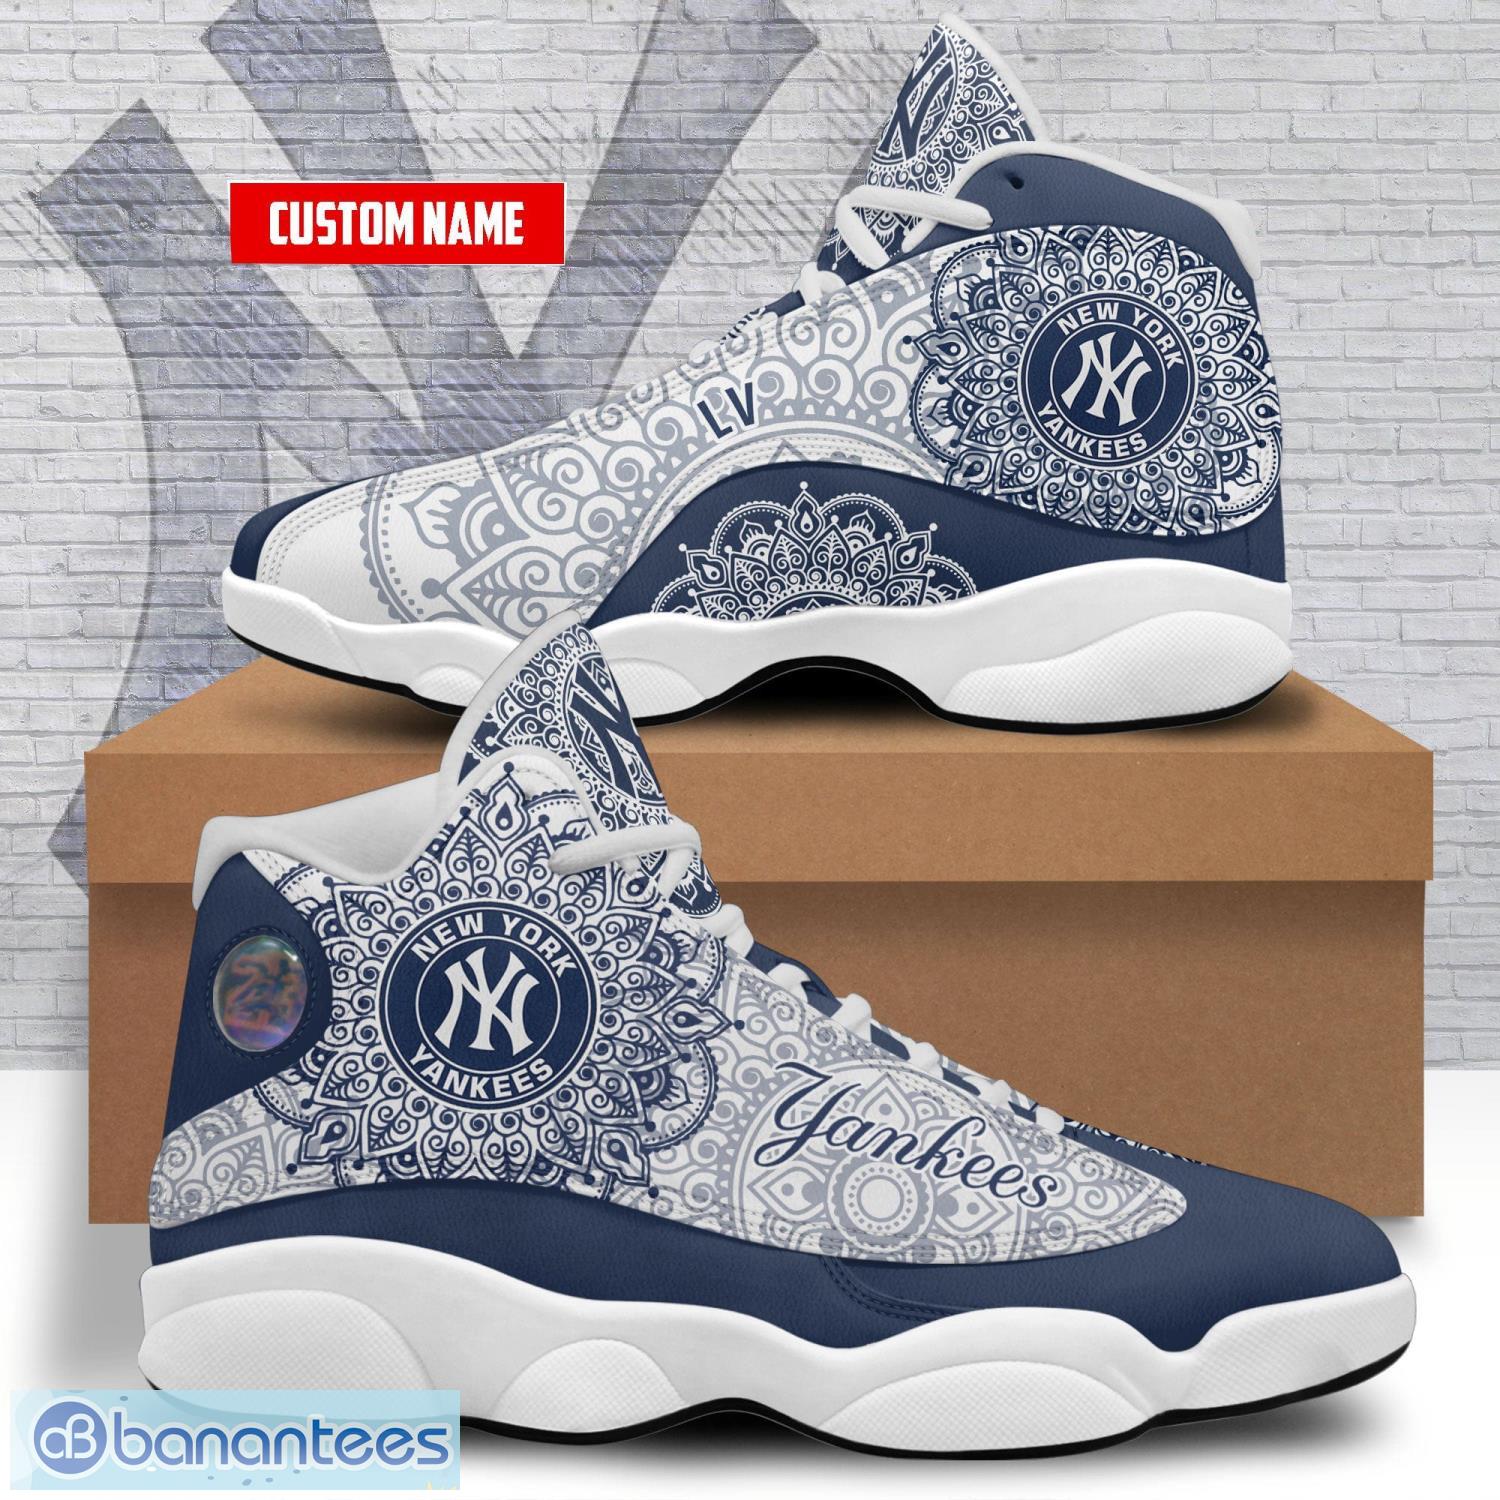 New York Yankees Air Jordan 13 Custom Name Personalized Shoes